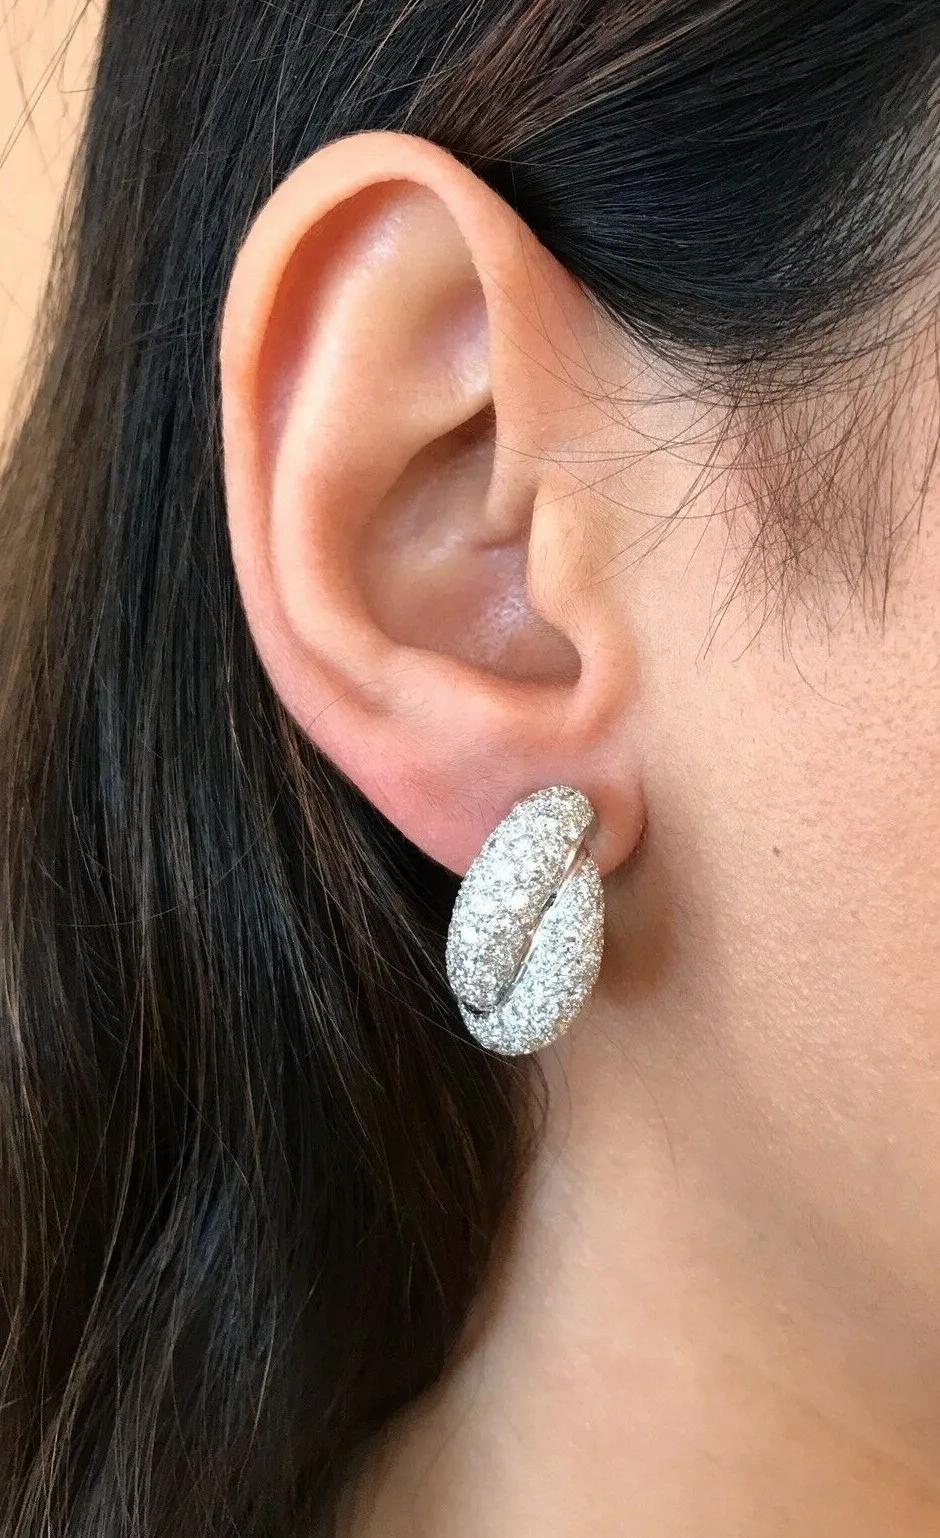 Französische Pavé-Diamant-Ohrringe aus 18k Weißgold

Die zweireihigen Pavé-Ohrringe sind mit 4,48 Karat runden Brillanten in 18-karätigem Weißgold gepavét. Die Ohrringe sind zum Anstecken für nicht durchstochene Ohren.

Das Gesamtgewicht der